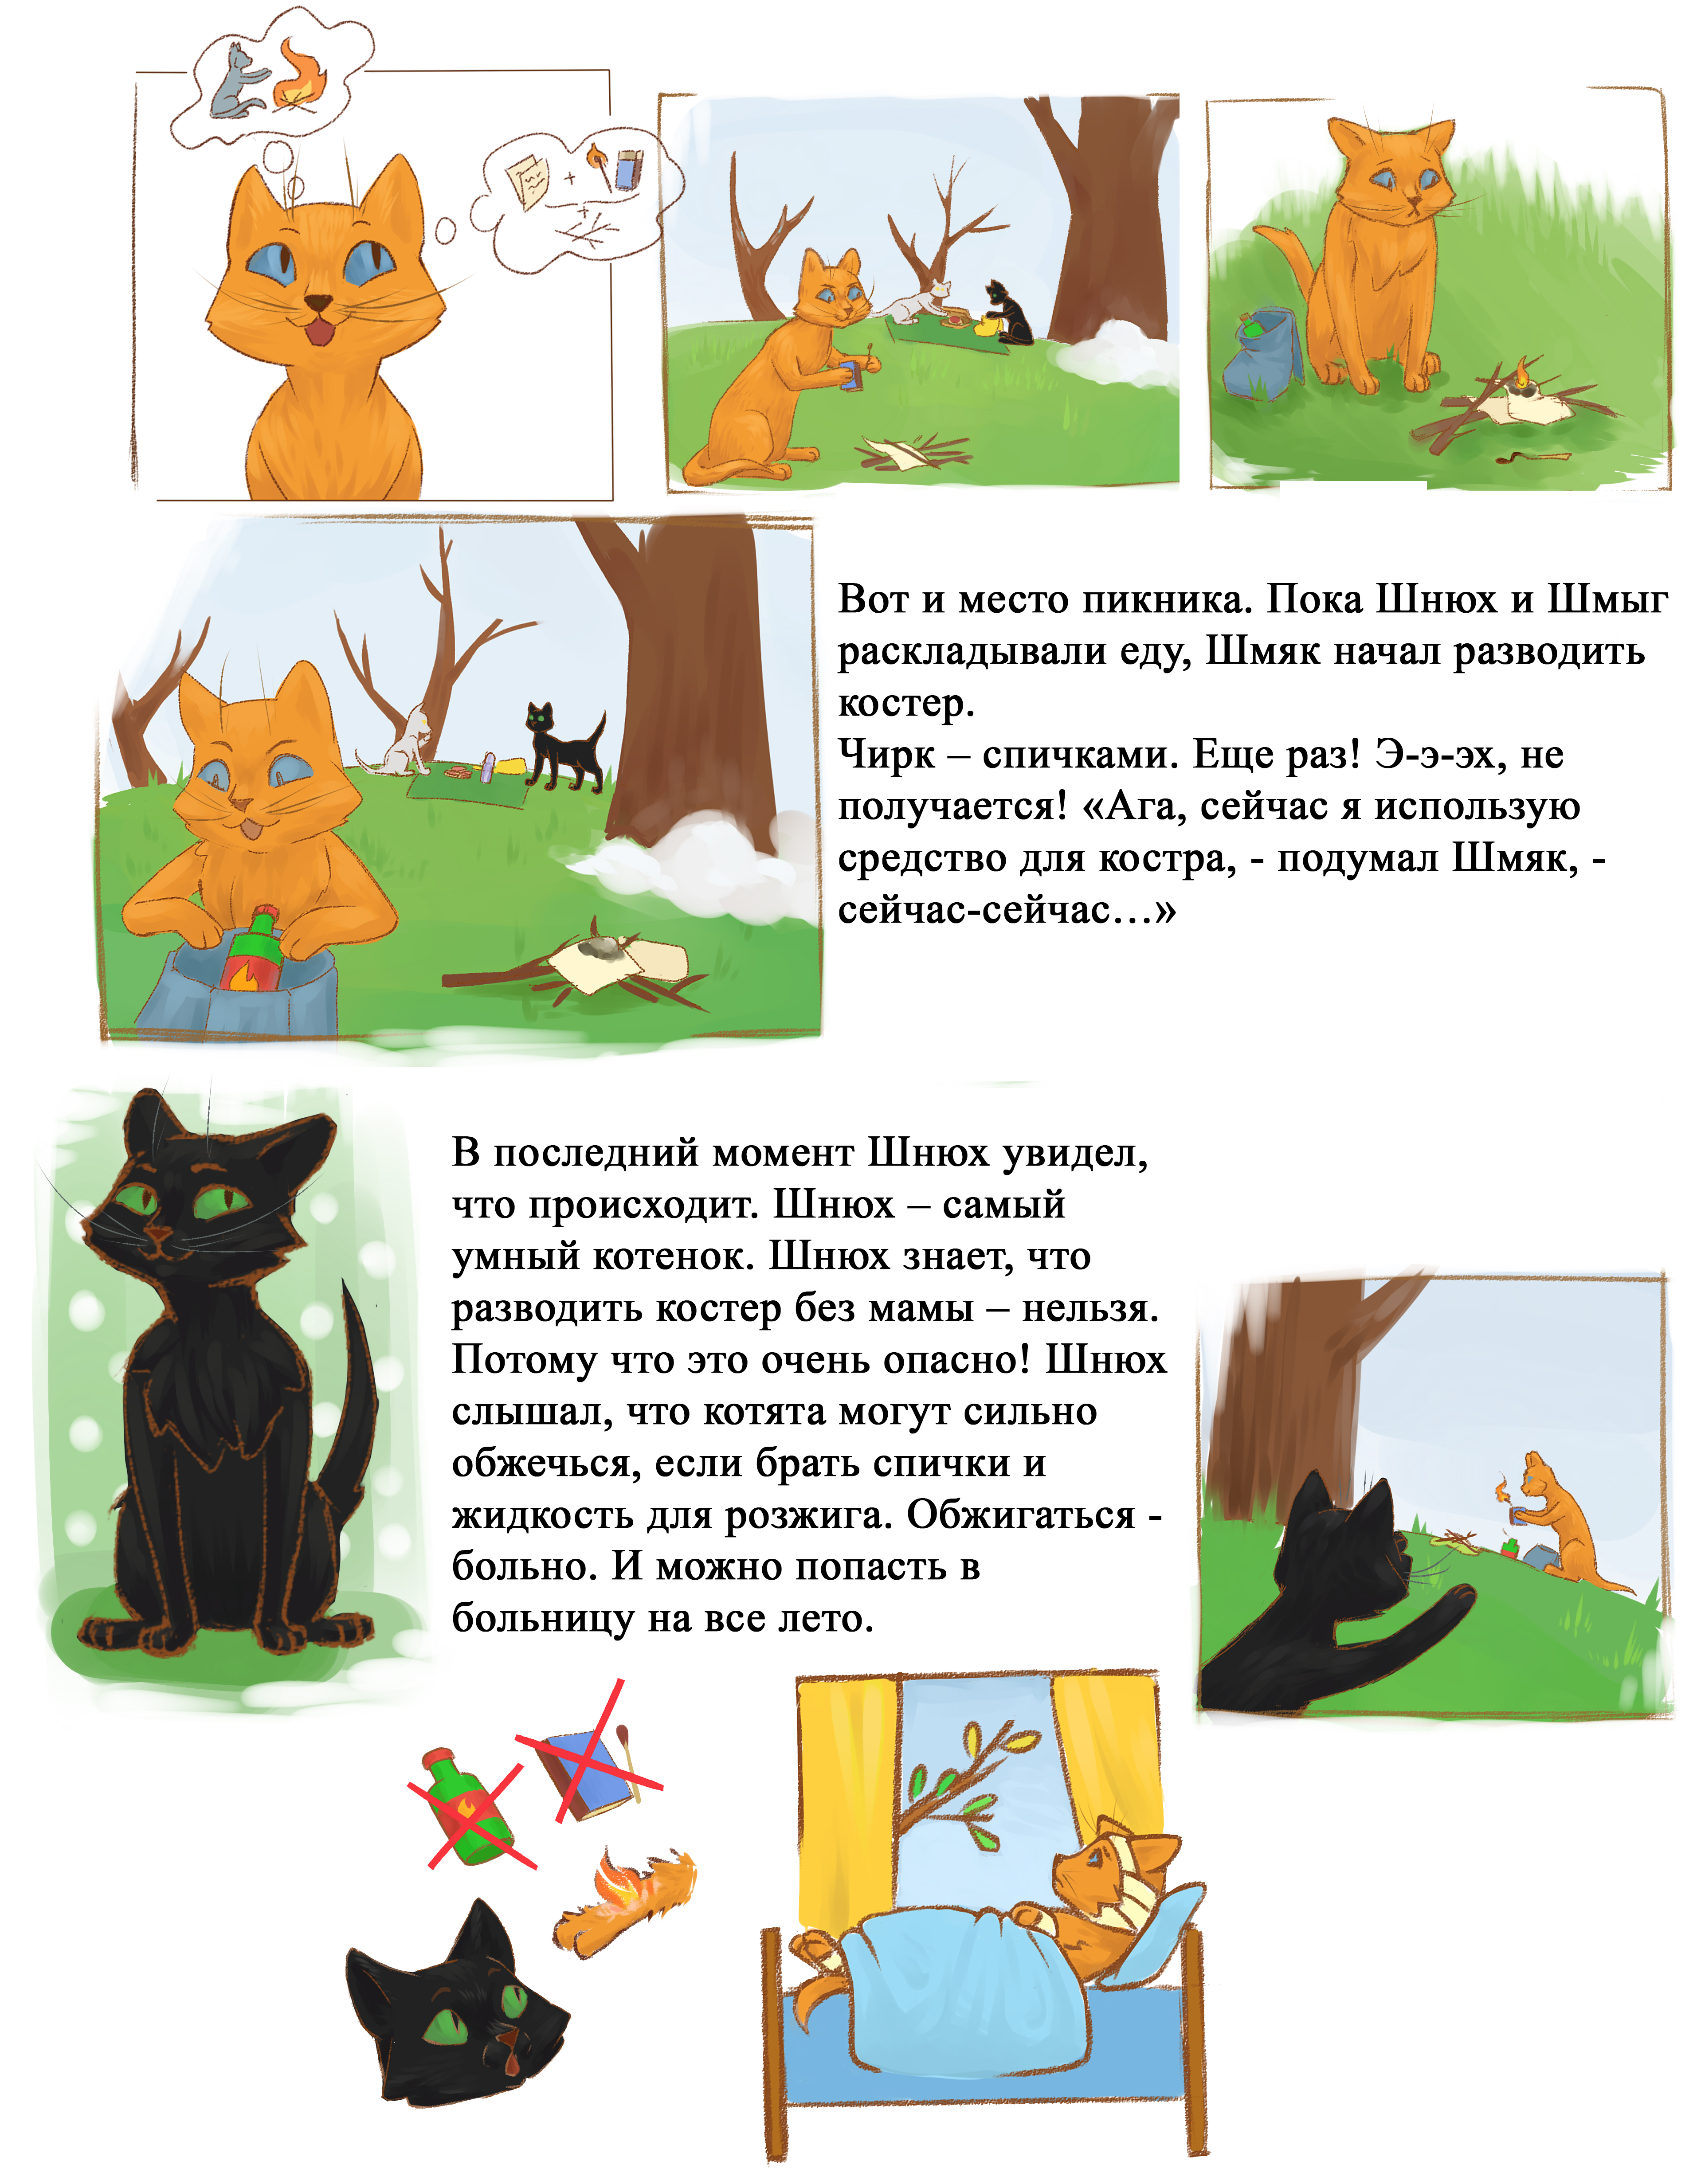 Пикник. Комикс про котят, которые спасут детей от ожогов | Мир в каждый дом